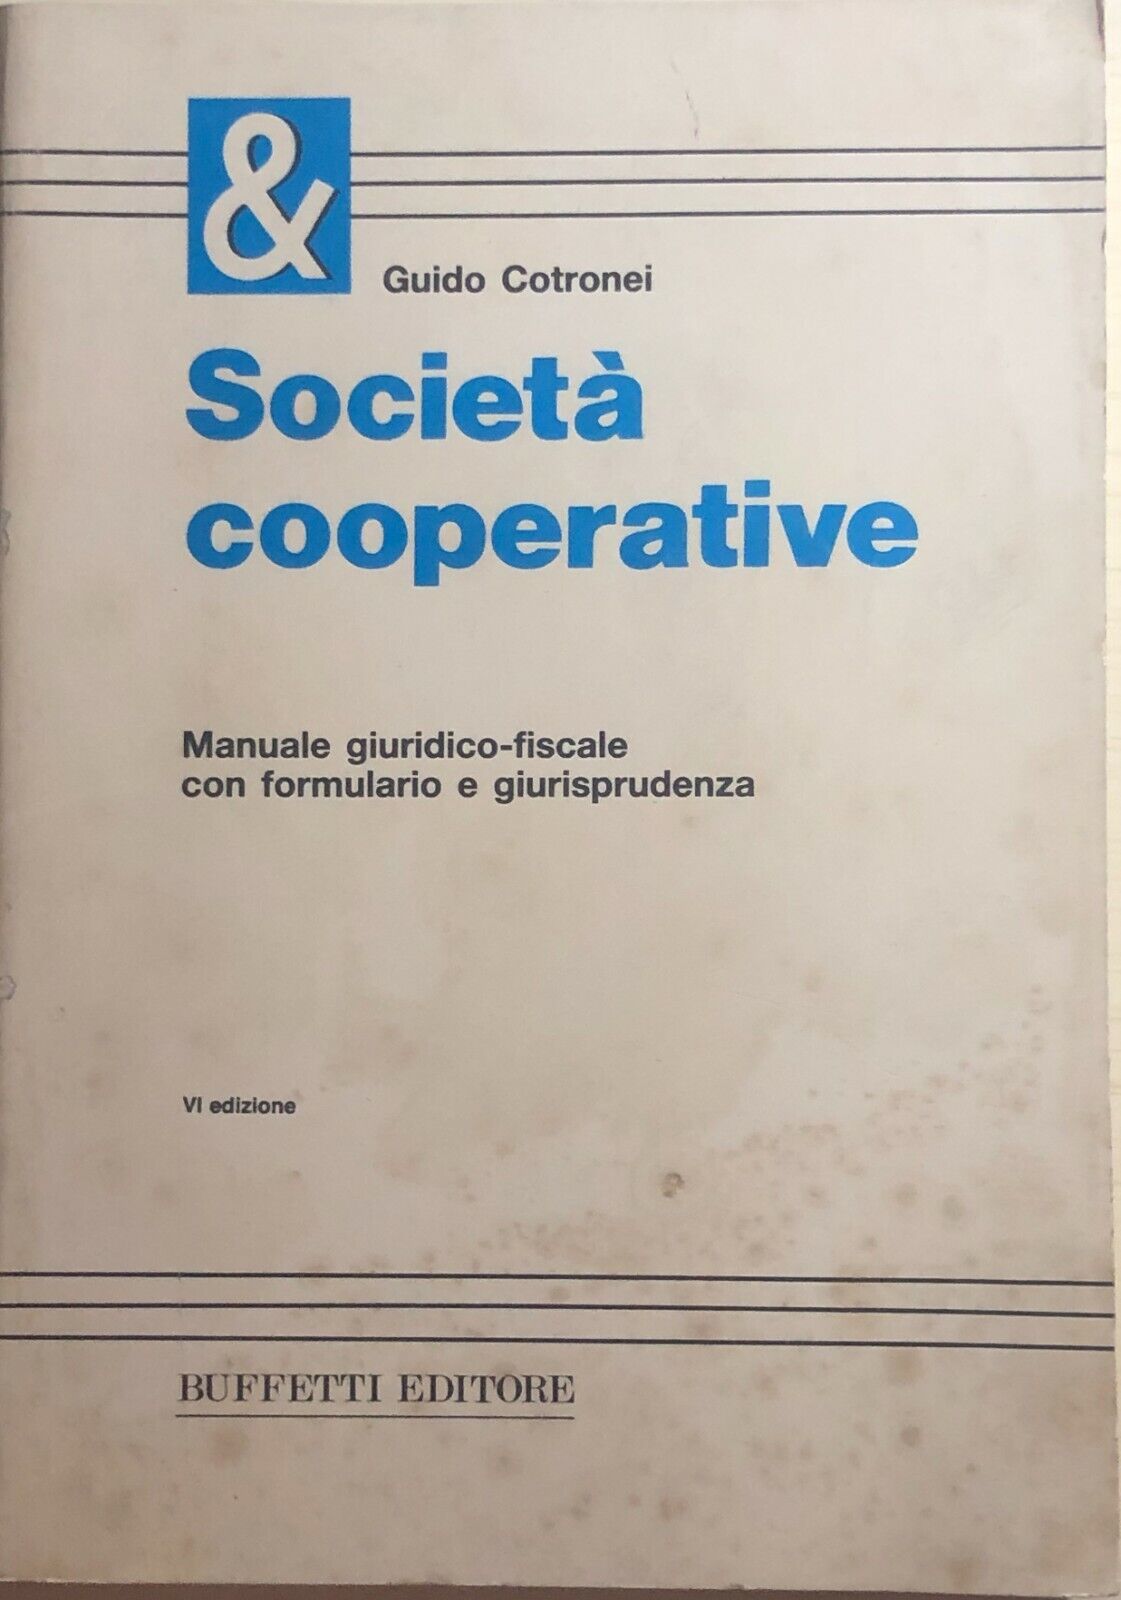 Societ? cooperative di Guido Cotronei, 1988, Buffetti Editore